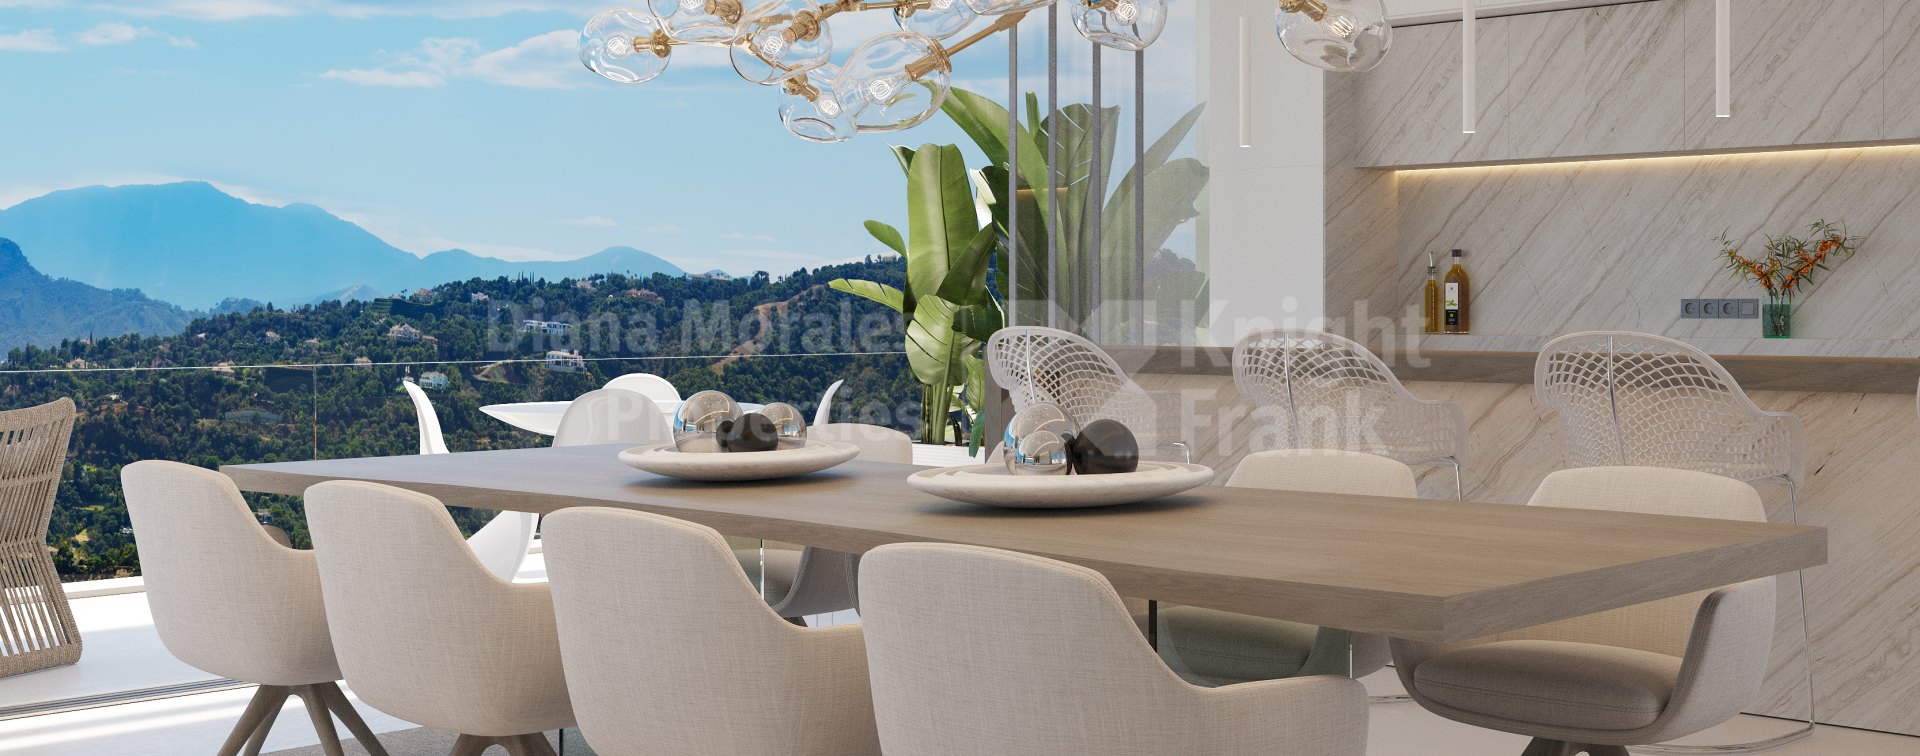 Real de La Quinta, Villa with stylisch design and bird's eye views